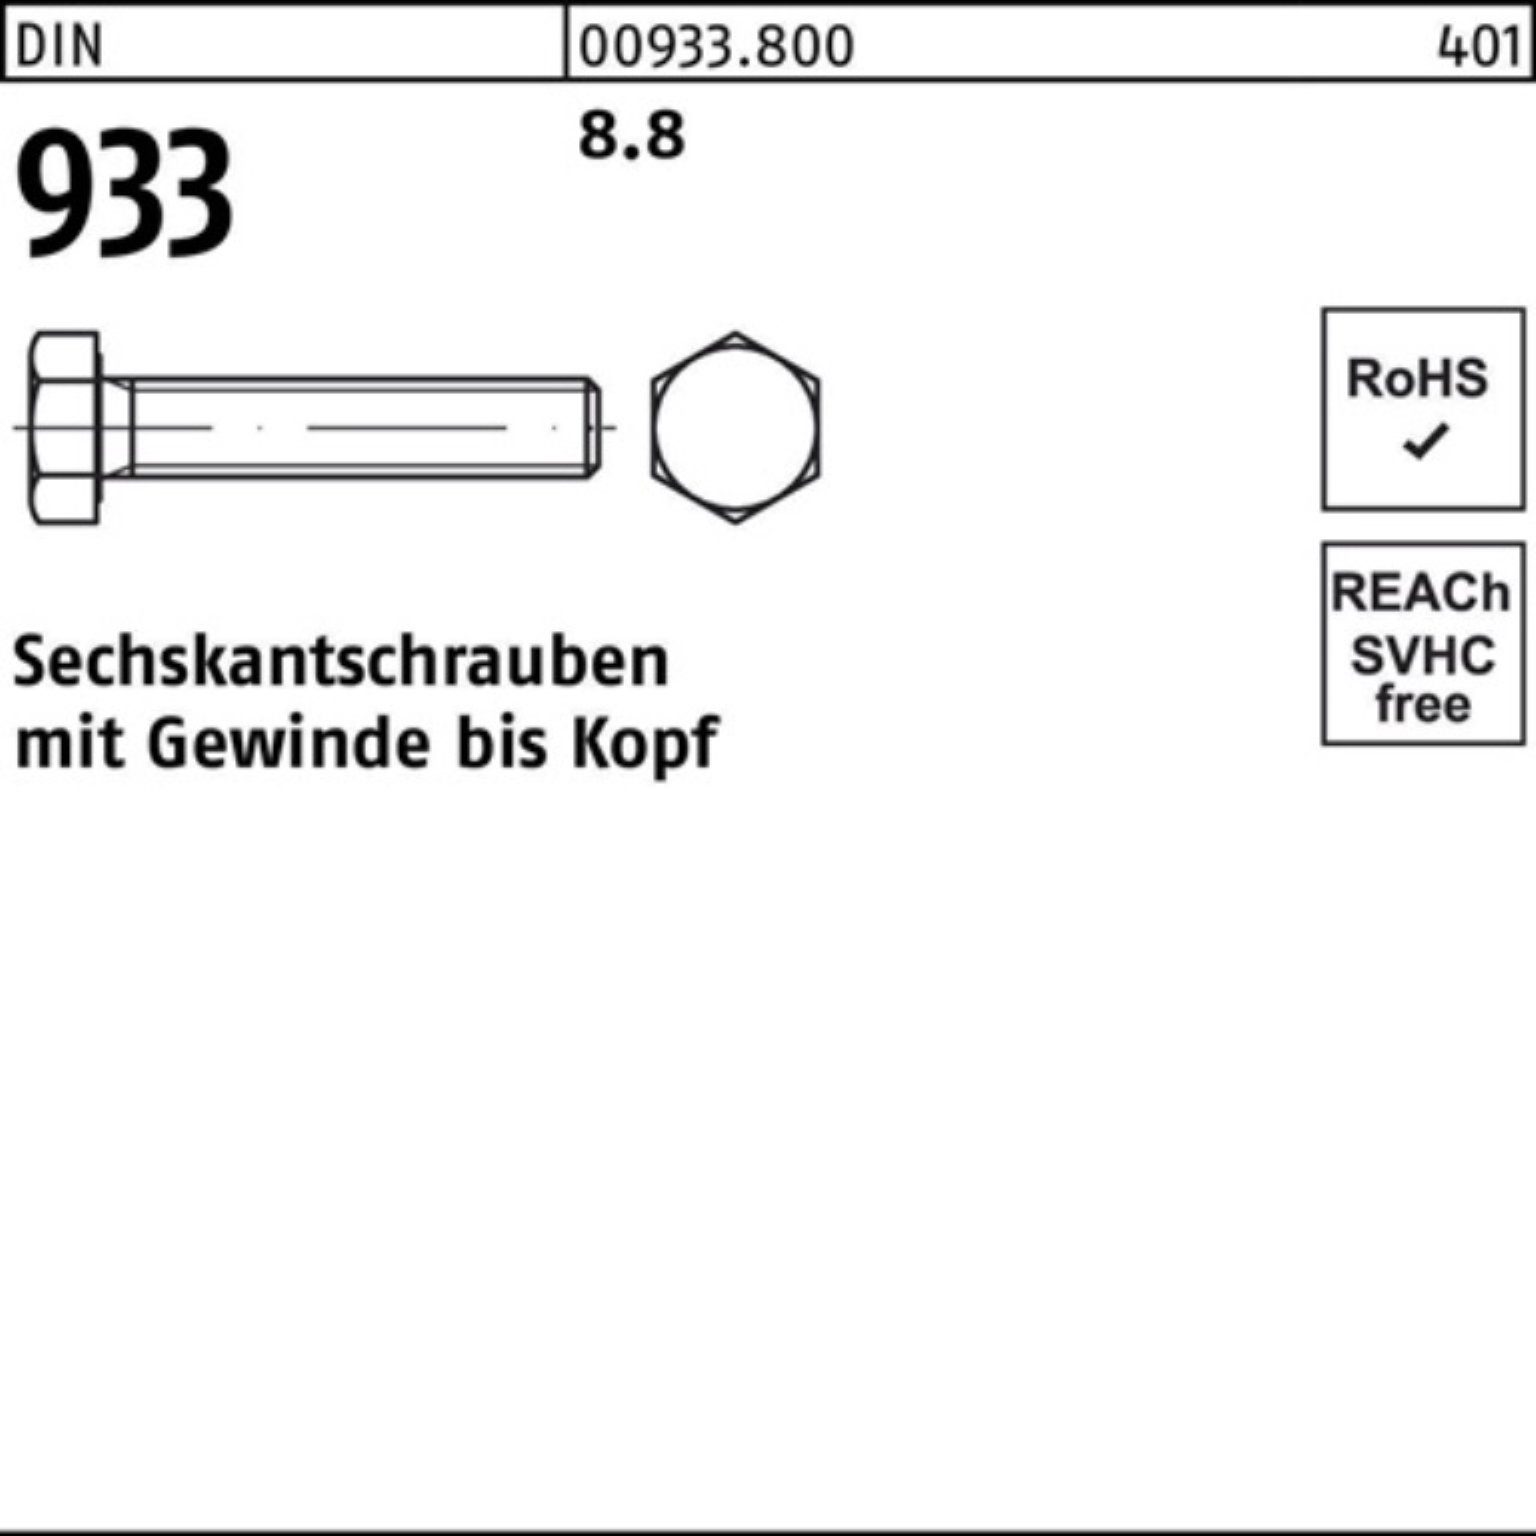 Reyher Sechskantschraube 933 120 8.8 25 Pack DIN Sechskantschraube VG 933 M20x DIN 100er Stück